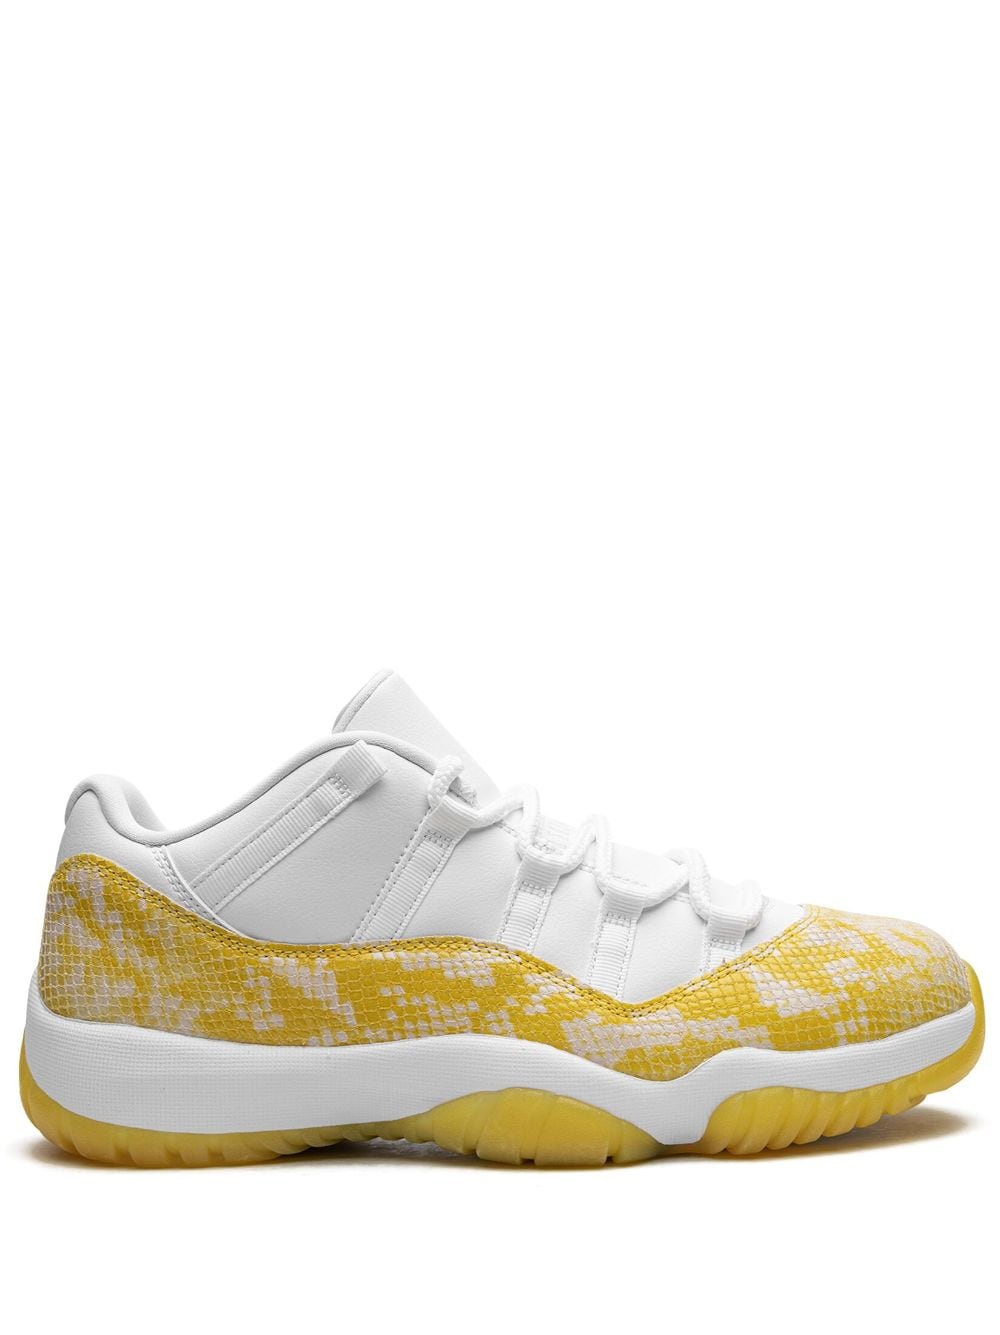 Image 1 of Jordan Air Jordan 11 Low "Yellow Snakeskin" sneakers